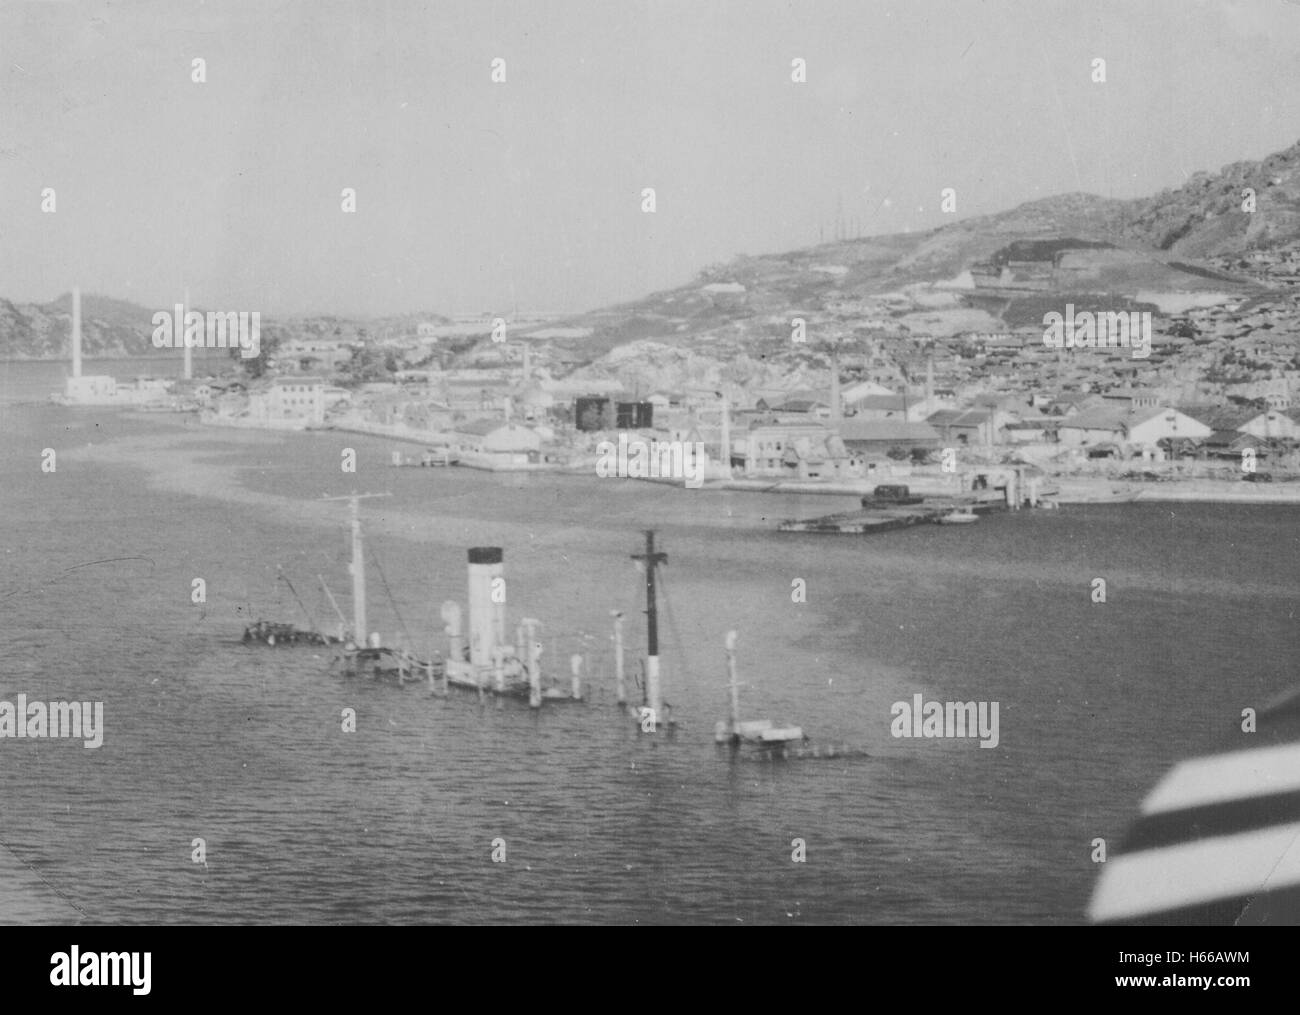 Sunken ship in Mokpo Harbour, Korea, 1954 Stock Photo